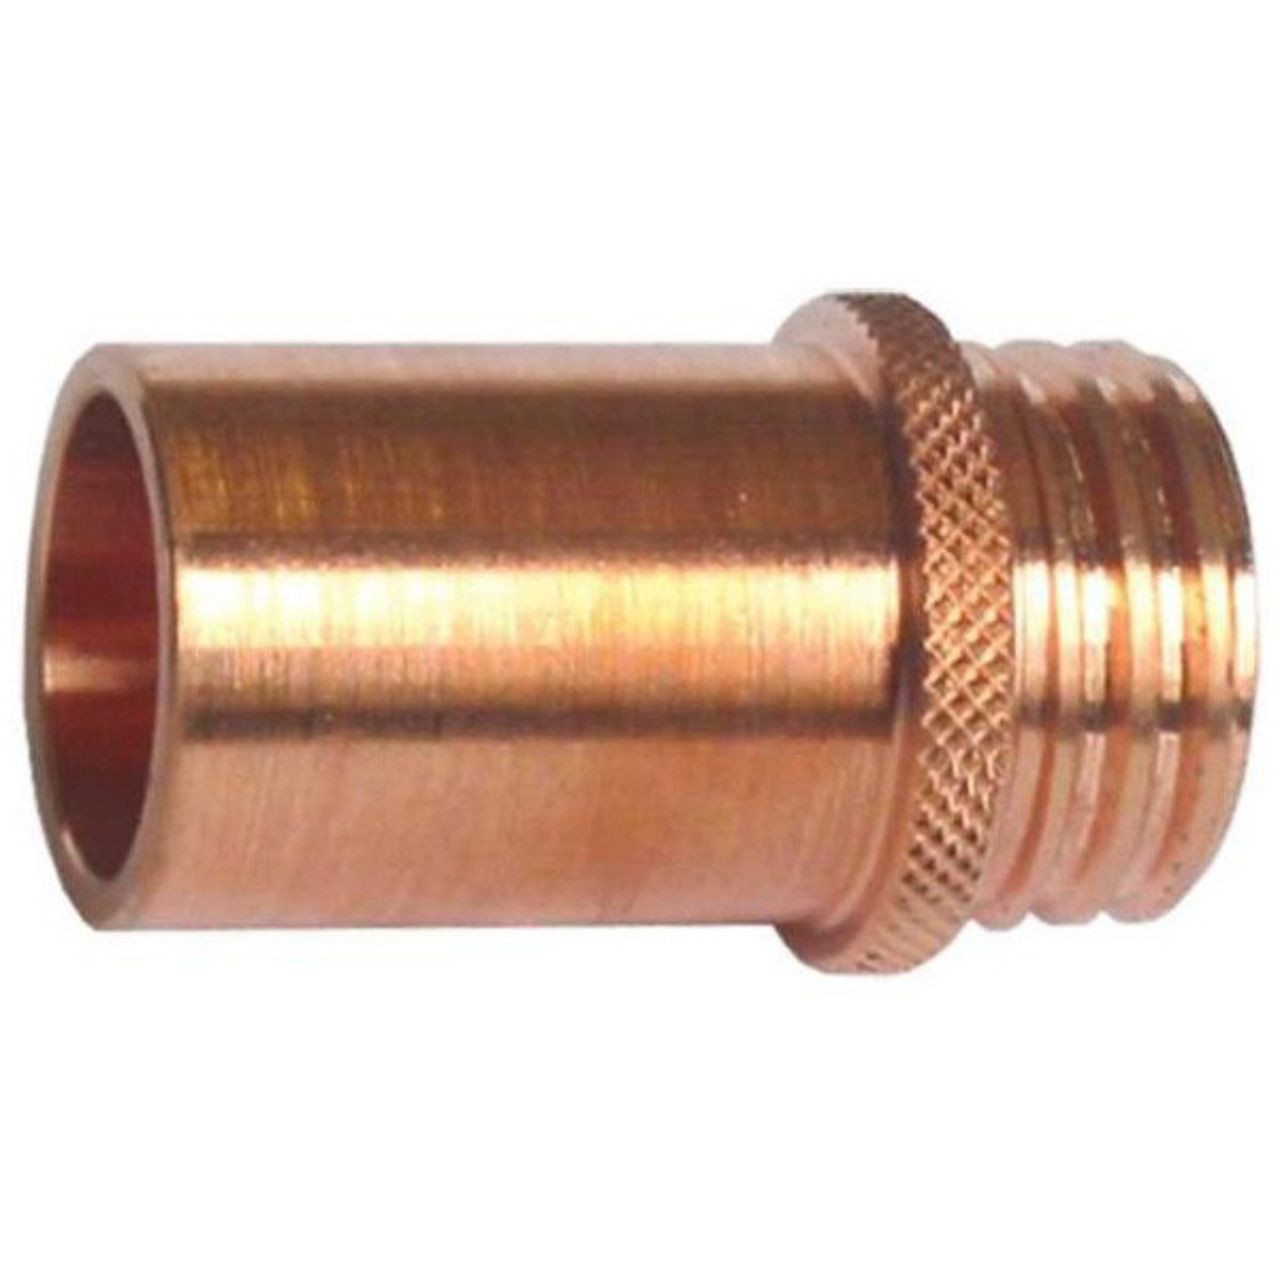 TW4 Nozzle Coarse Thread 19mm (24CT75) 2/pk